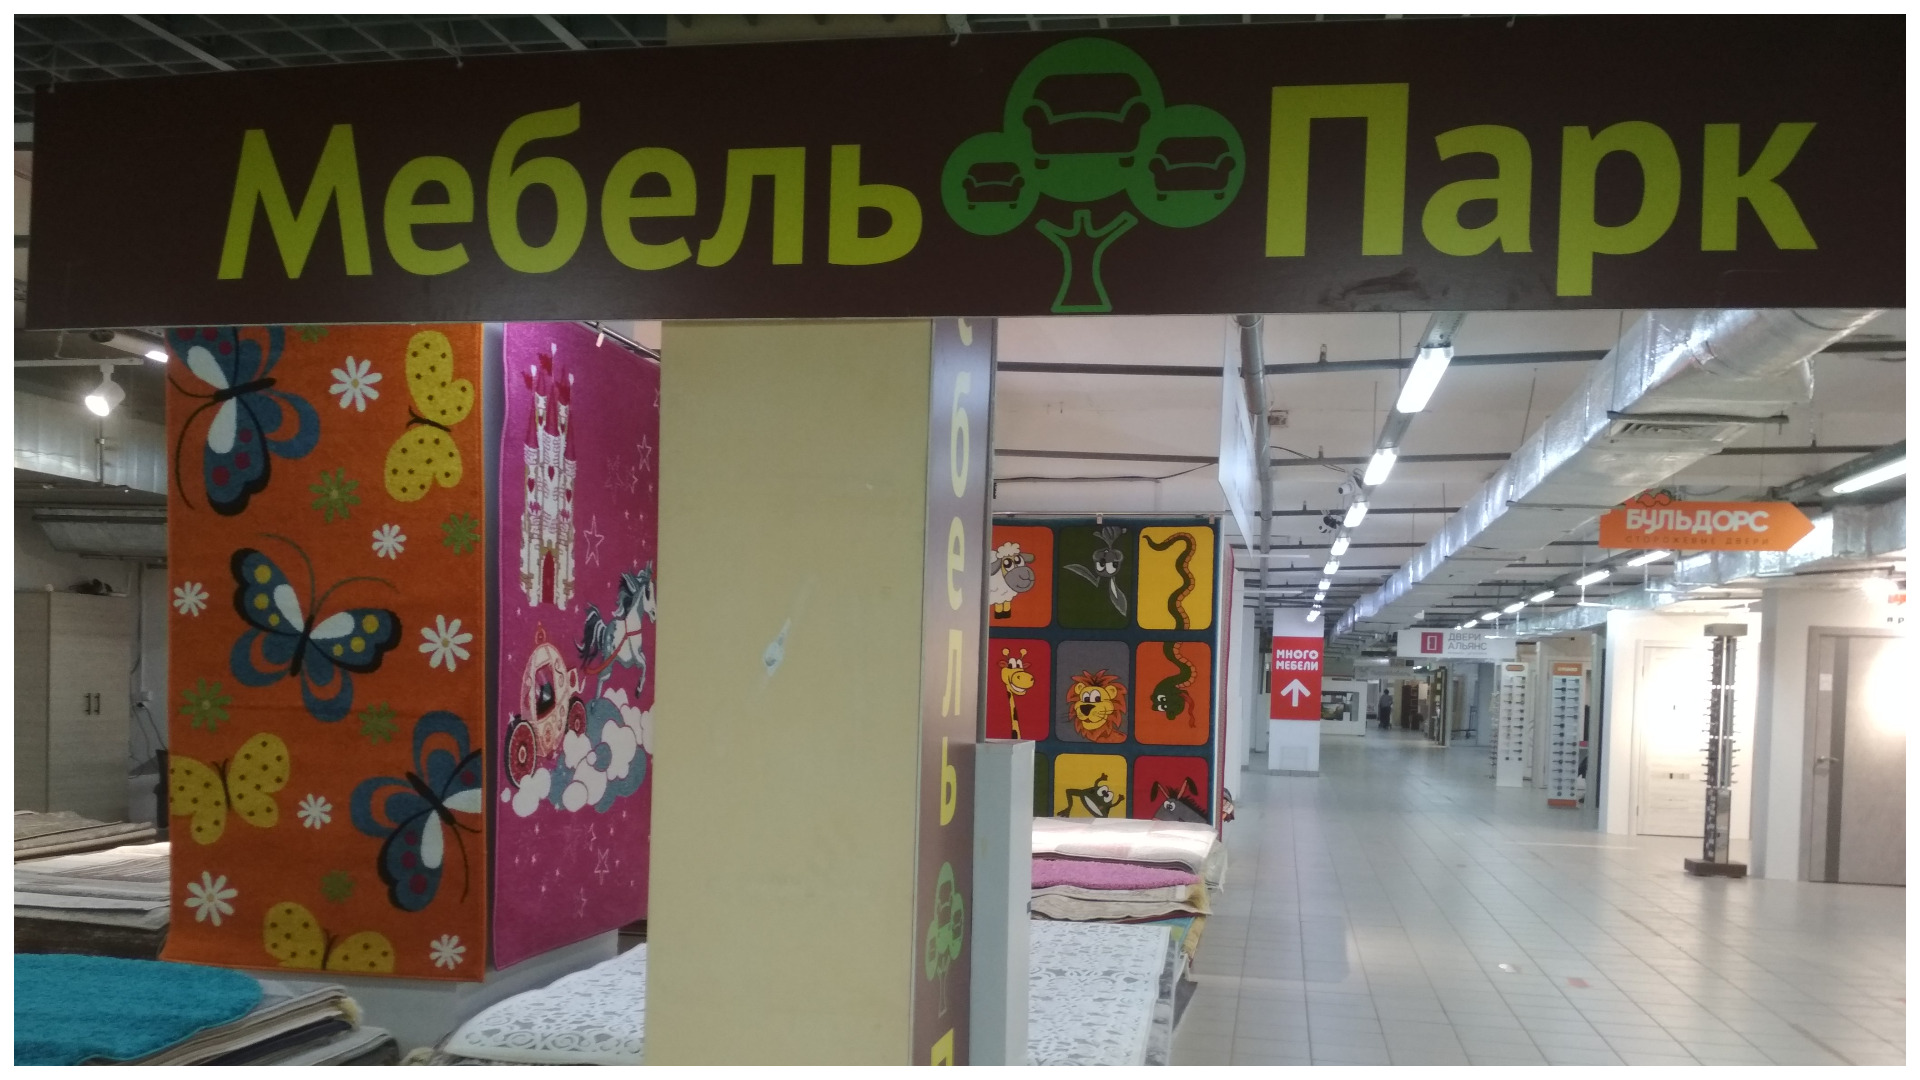 Магазин "Мебель парк" в ТЦ "Тополь".